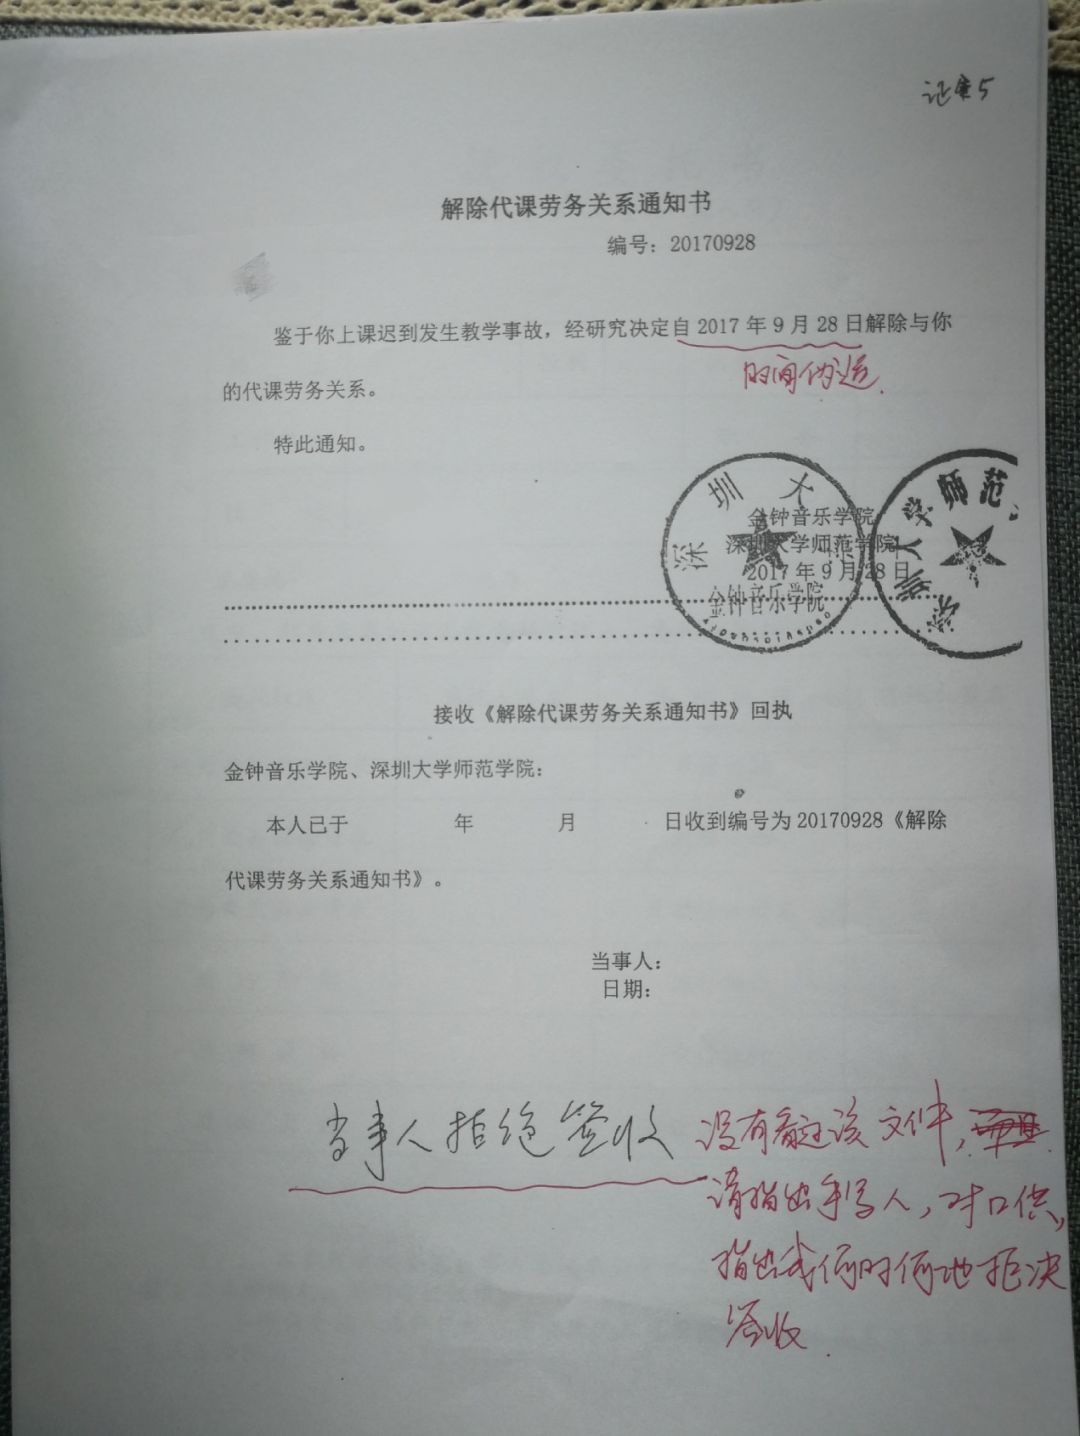 关于深圳大学师范学院违反劳动法事件的详情